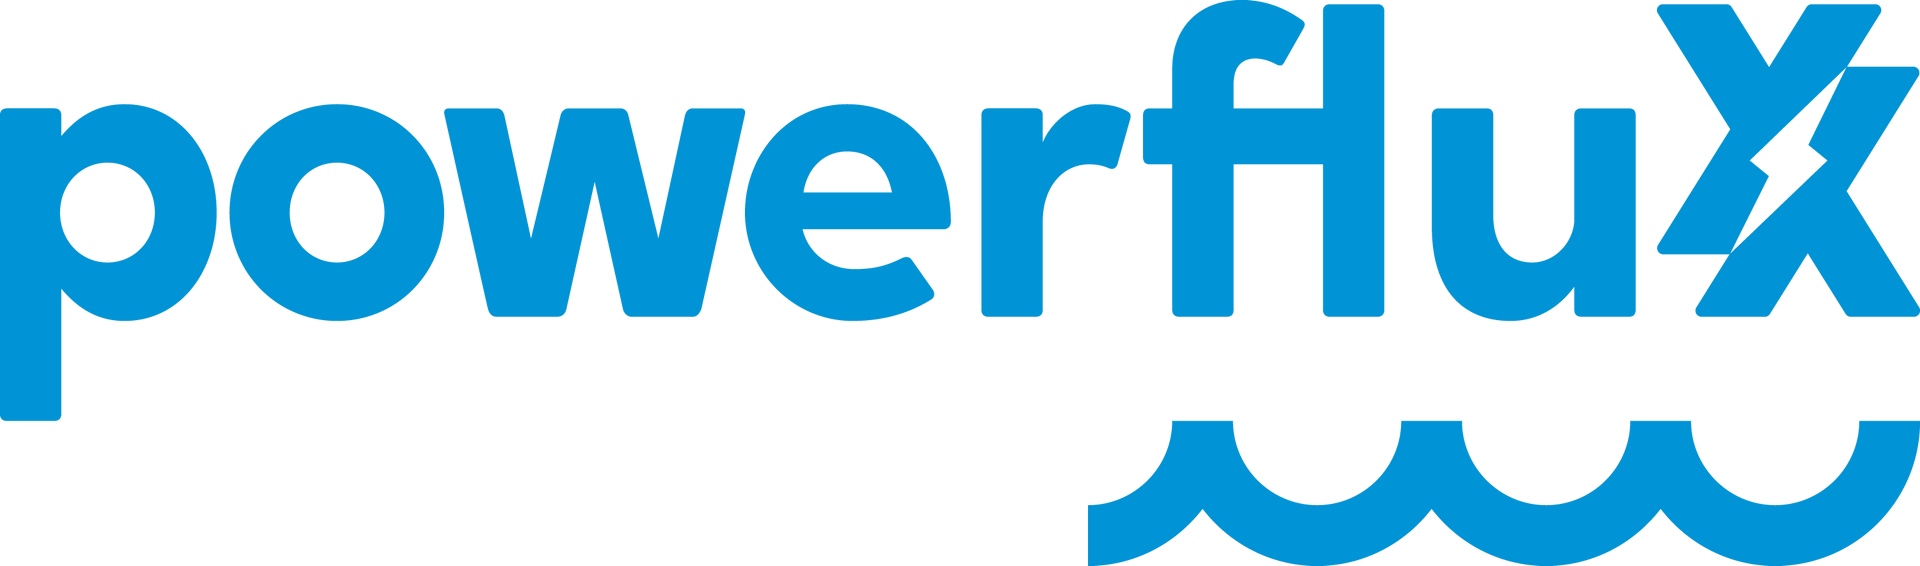 powerfluxx GmbH Logo